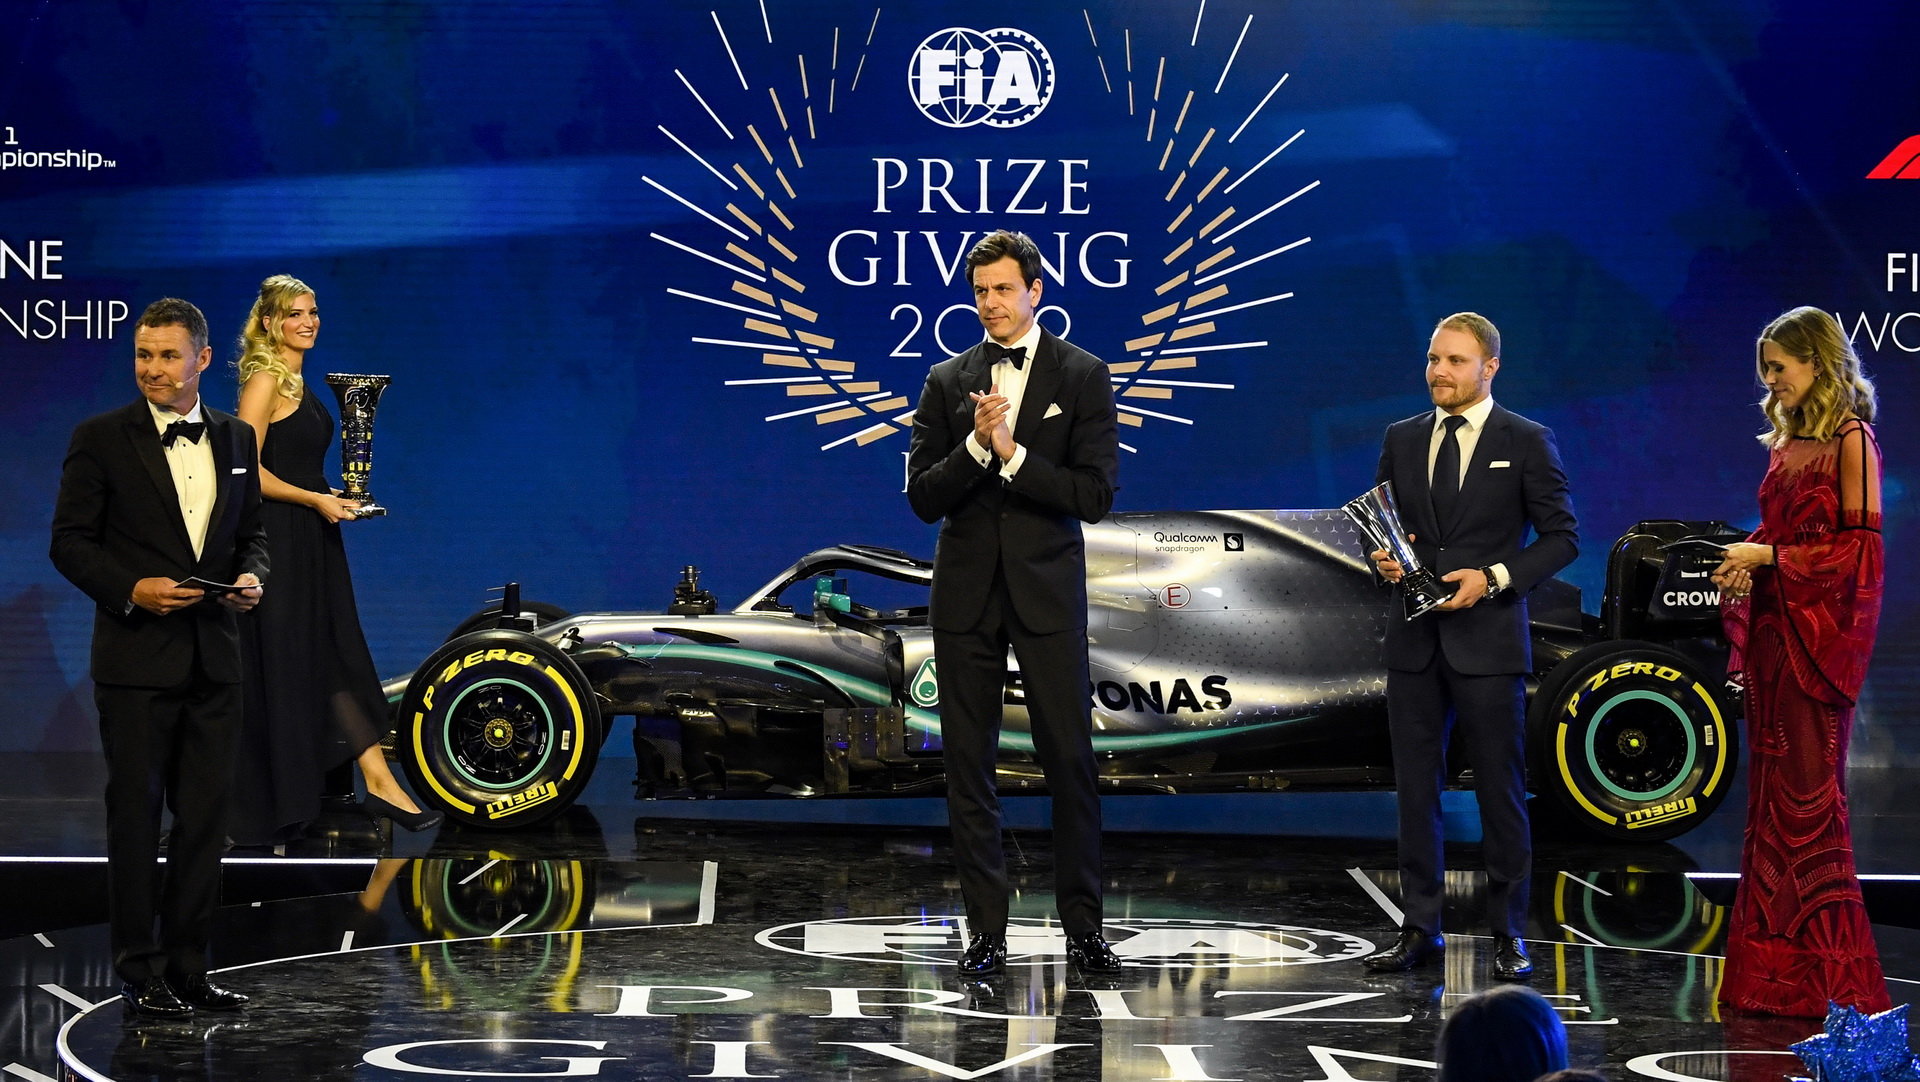 Slavnostní předávání cen za mistrovský titul v sezóně 2019 pro tým Mercedes